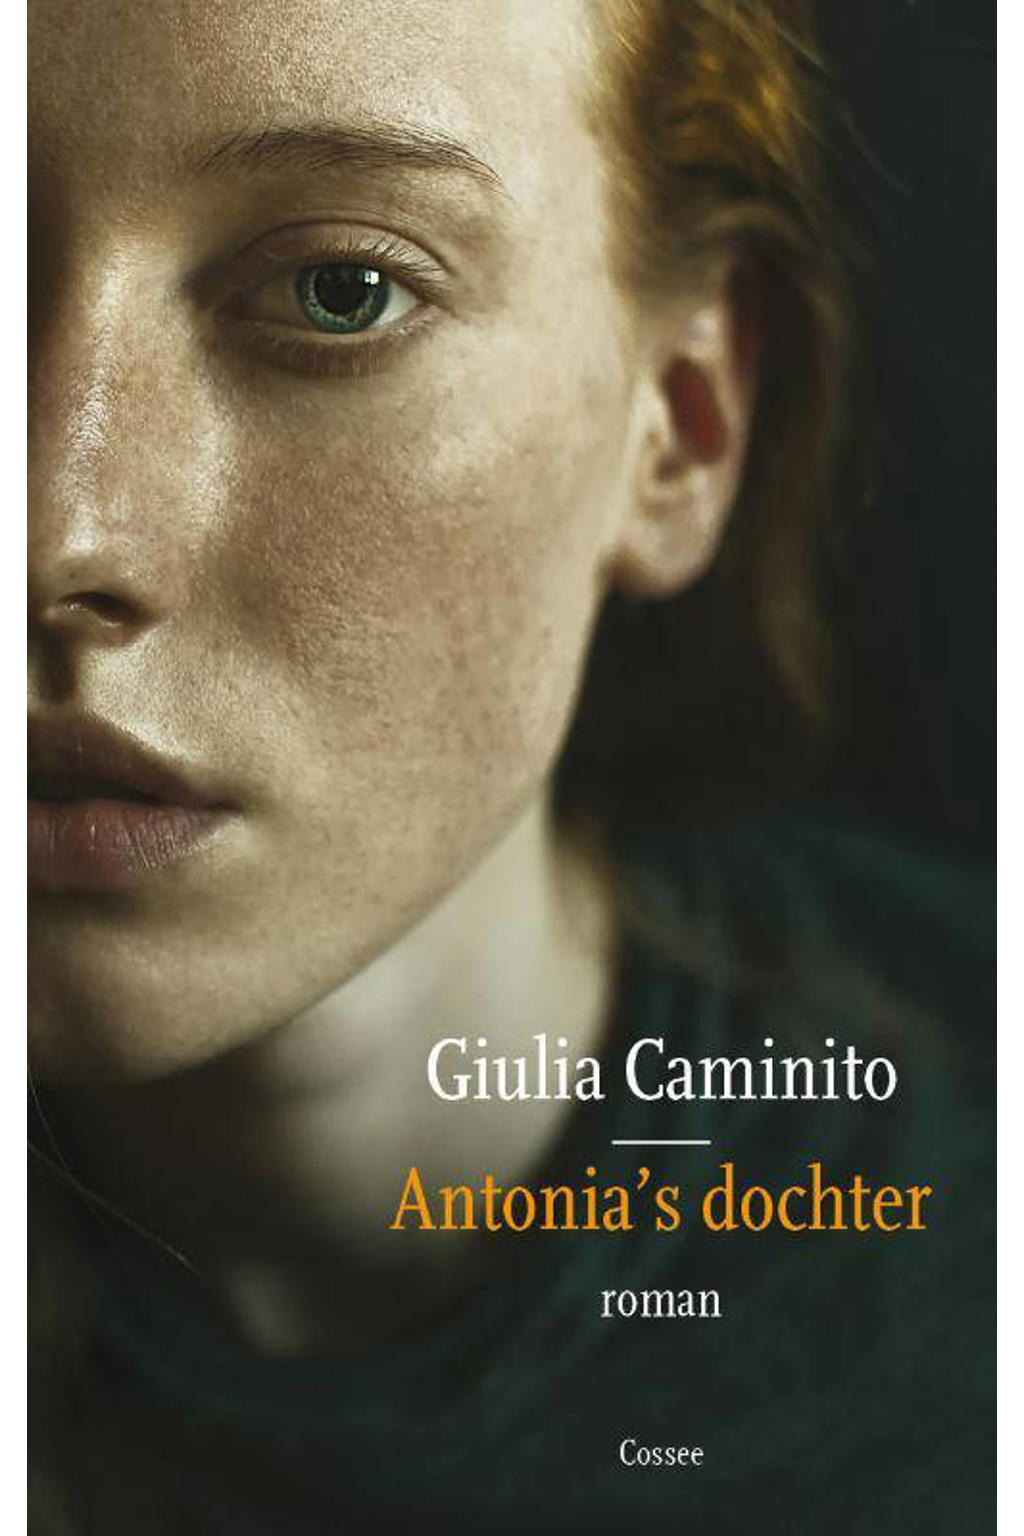 Antonia's dochter - Giulia Caminito